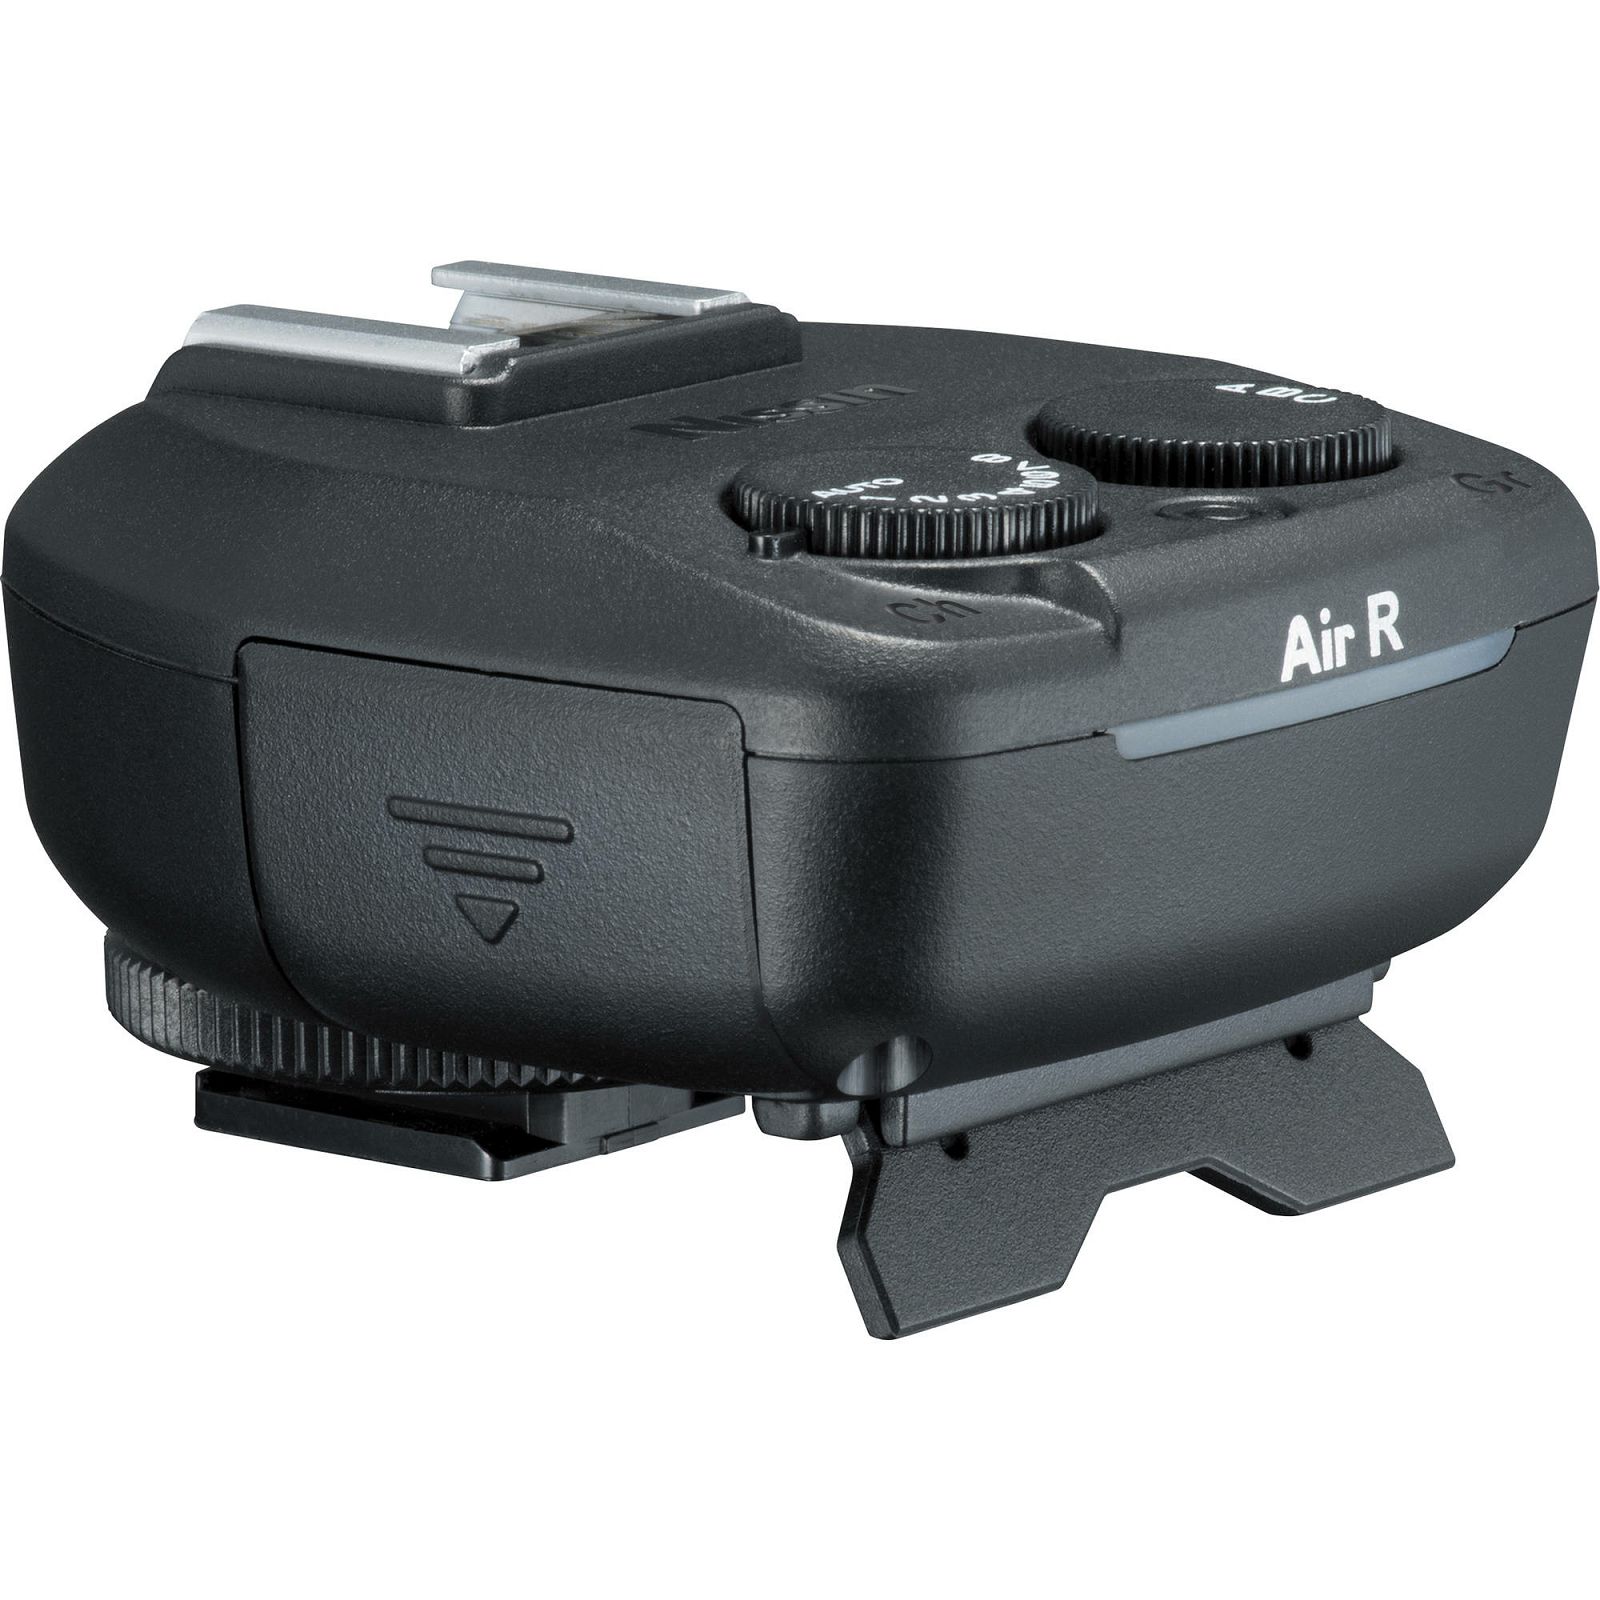 Nissin Receiver Air R TTL HSS bežični prijemnik za Nikon